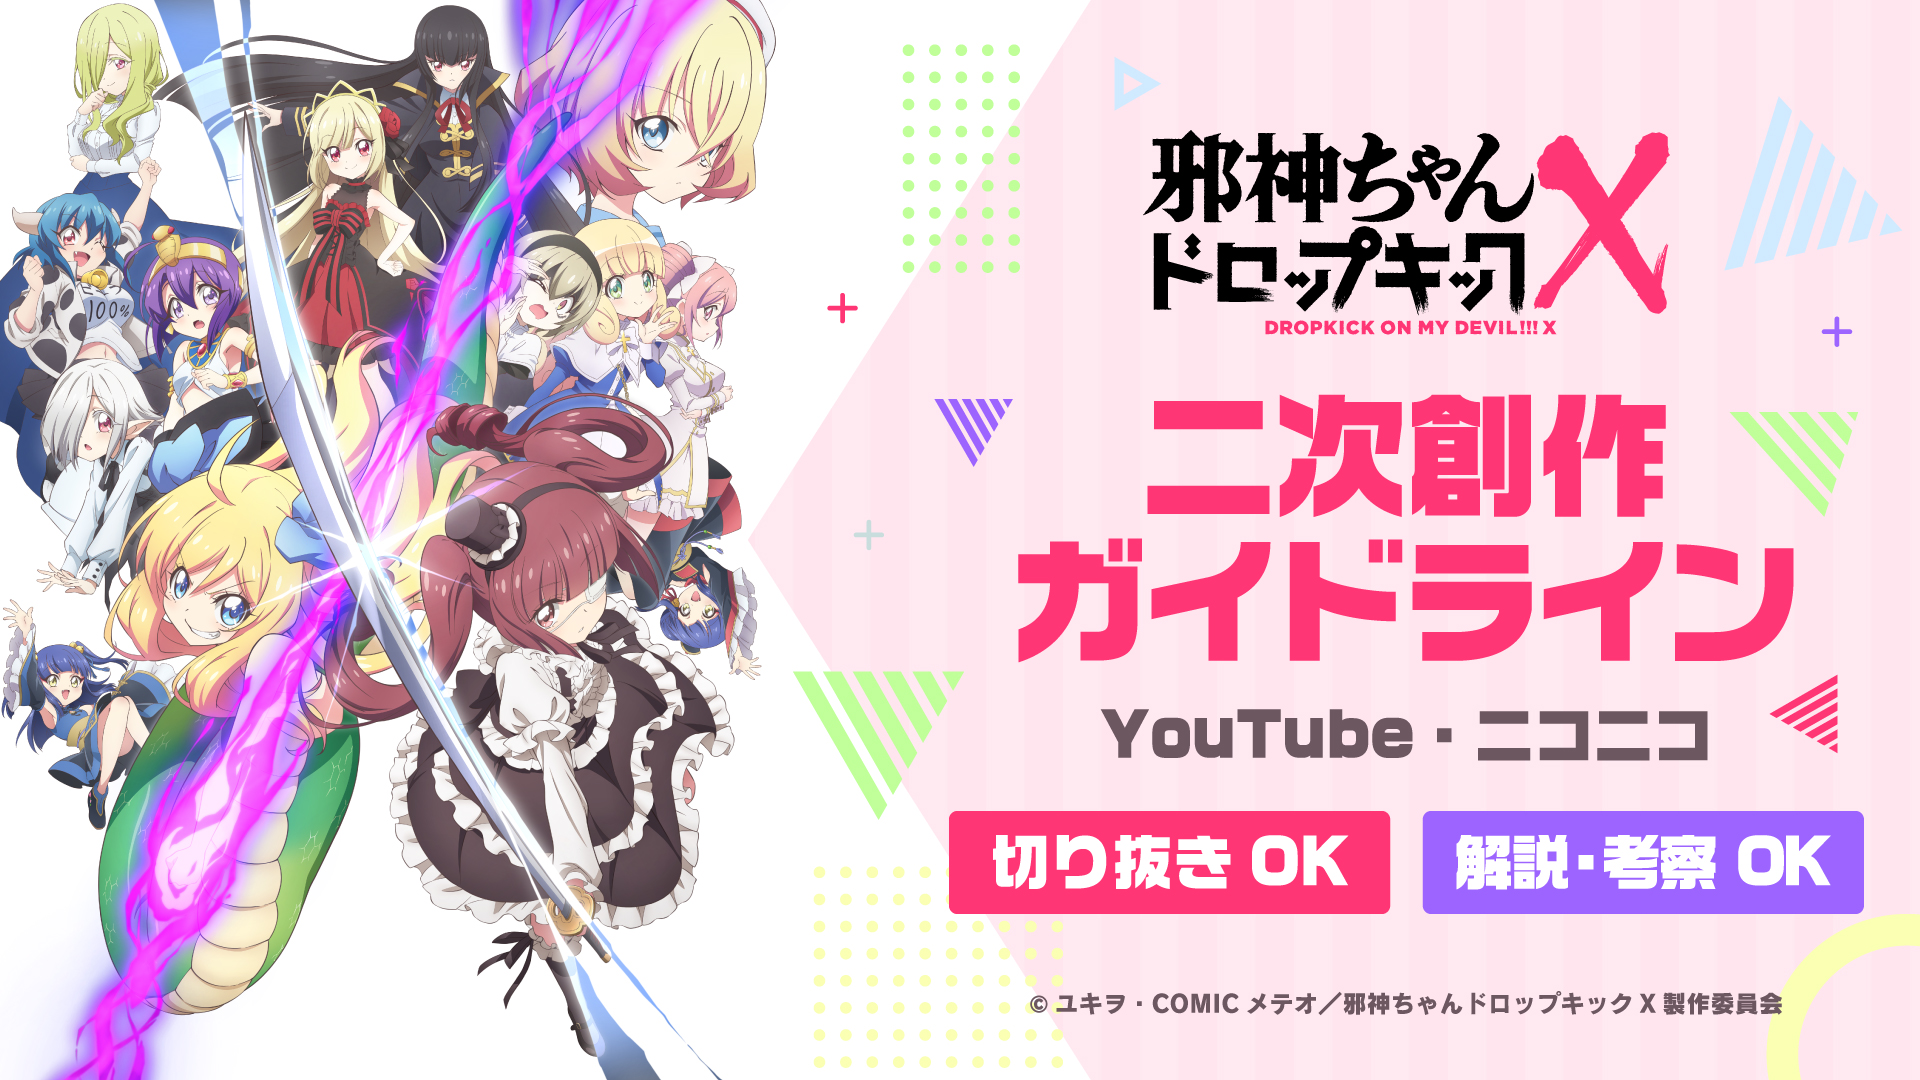 Tvアニメ世界初 邪神ちゃんドロップキックx Youtube ニコニコの二次創作ガイドライン発表 株式会社kadokawaのプレスリリース